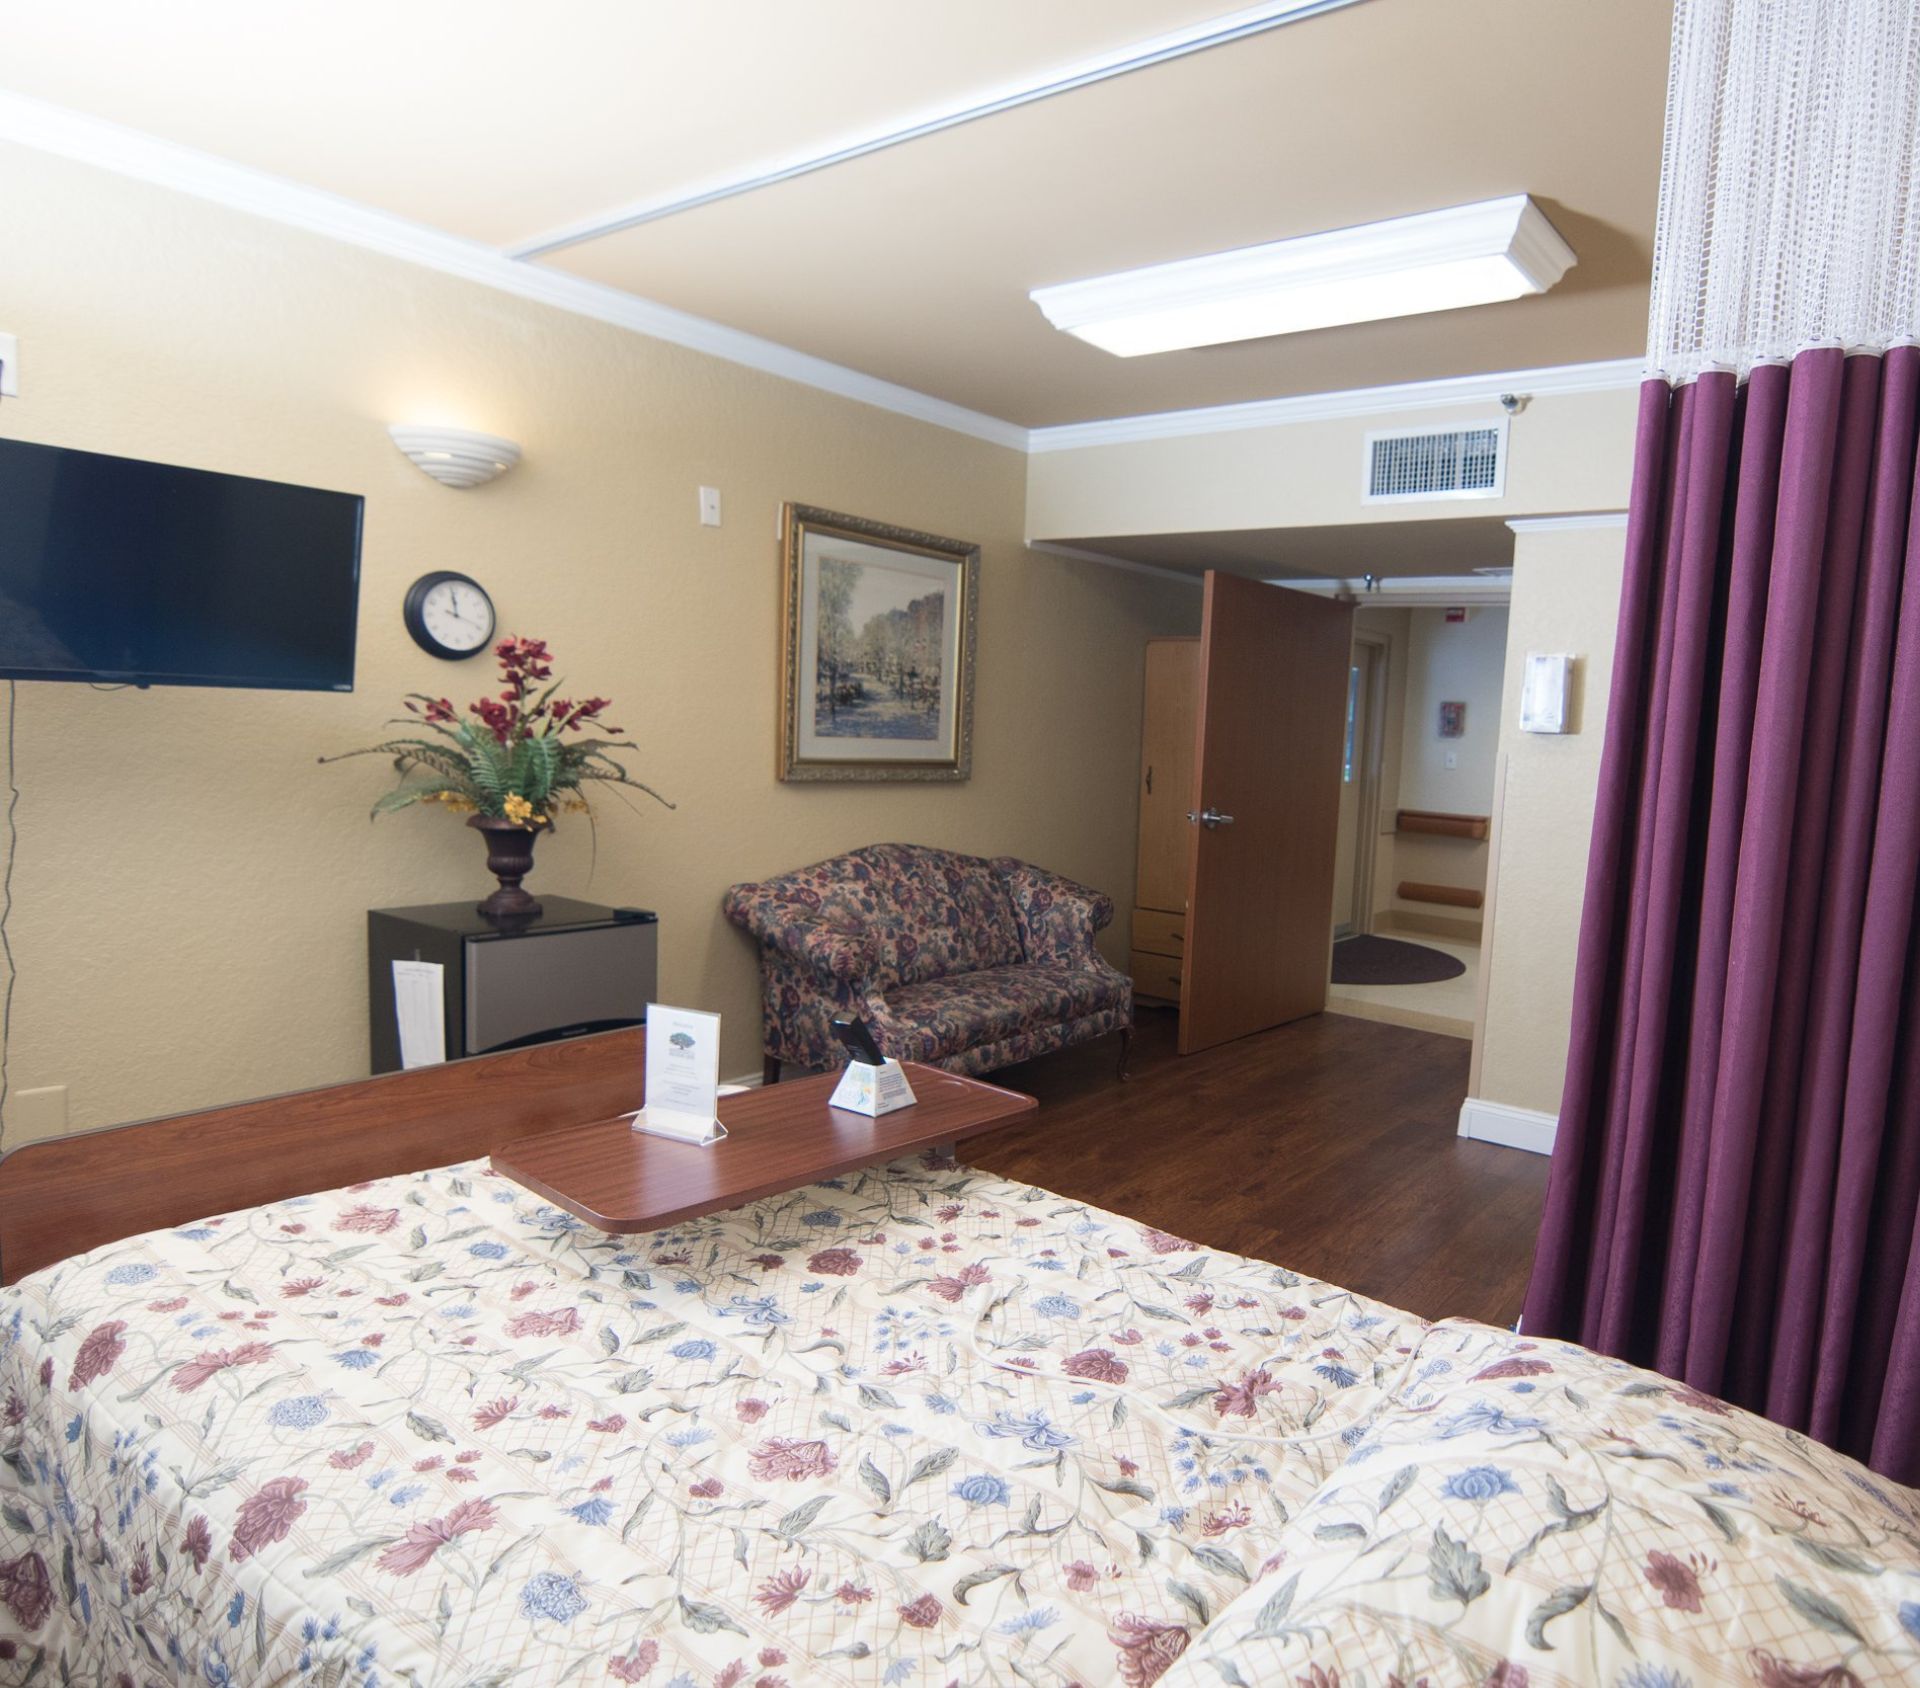 Bedroom in Brooksville healthcare center